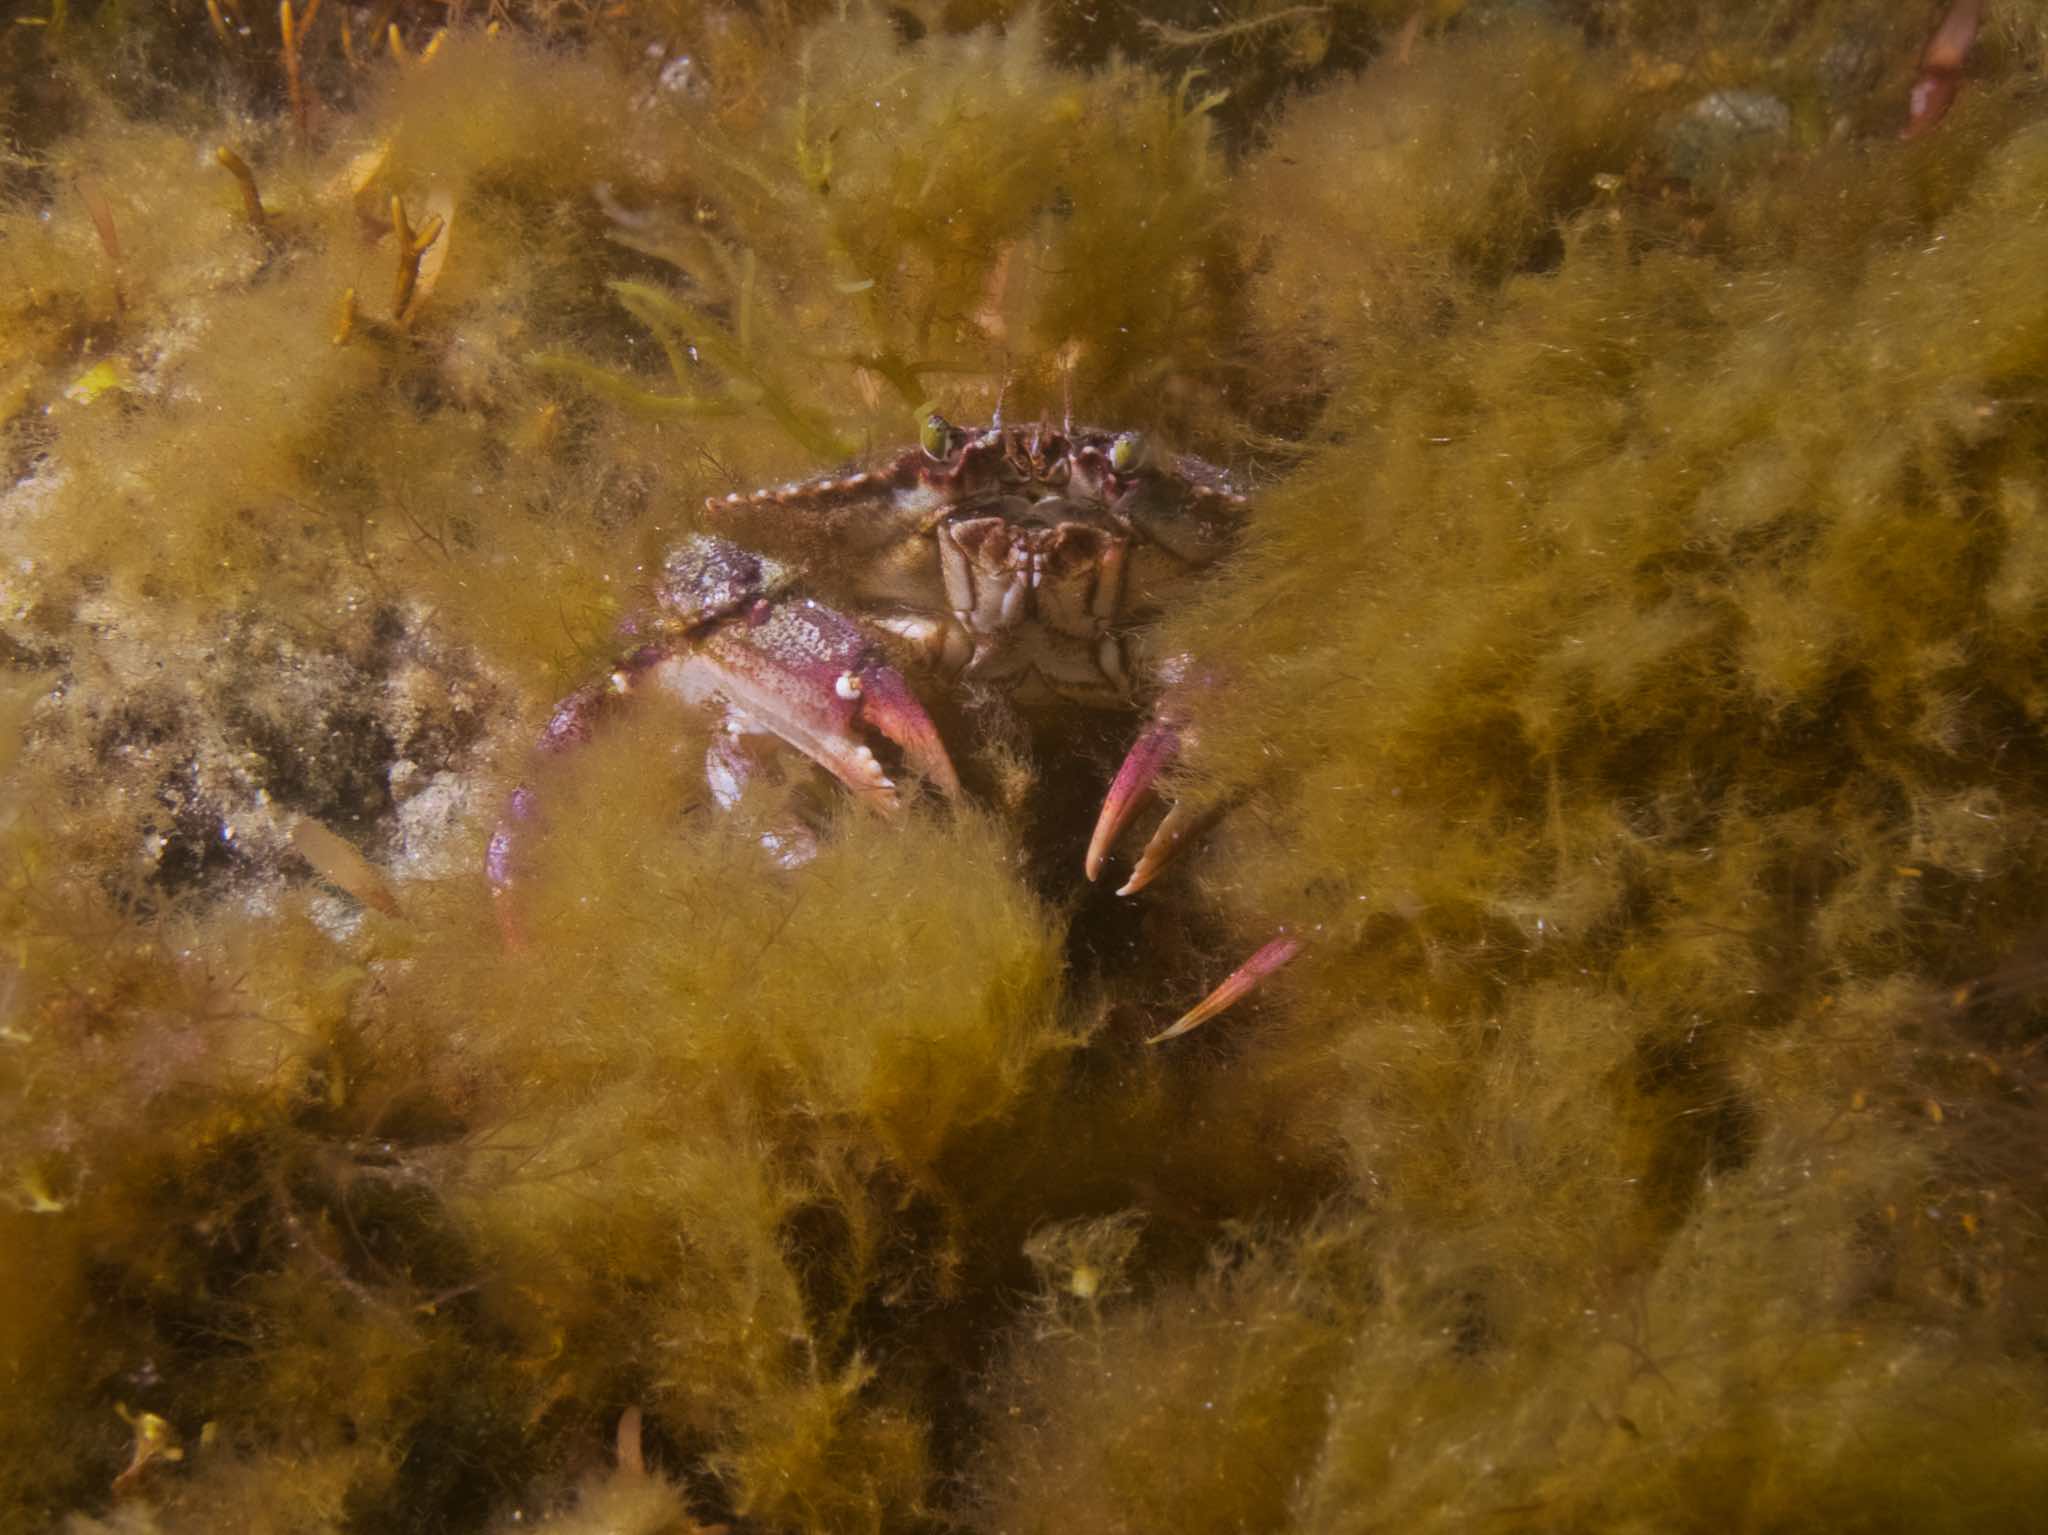 Crab in the kelp